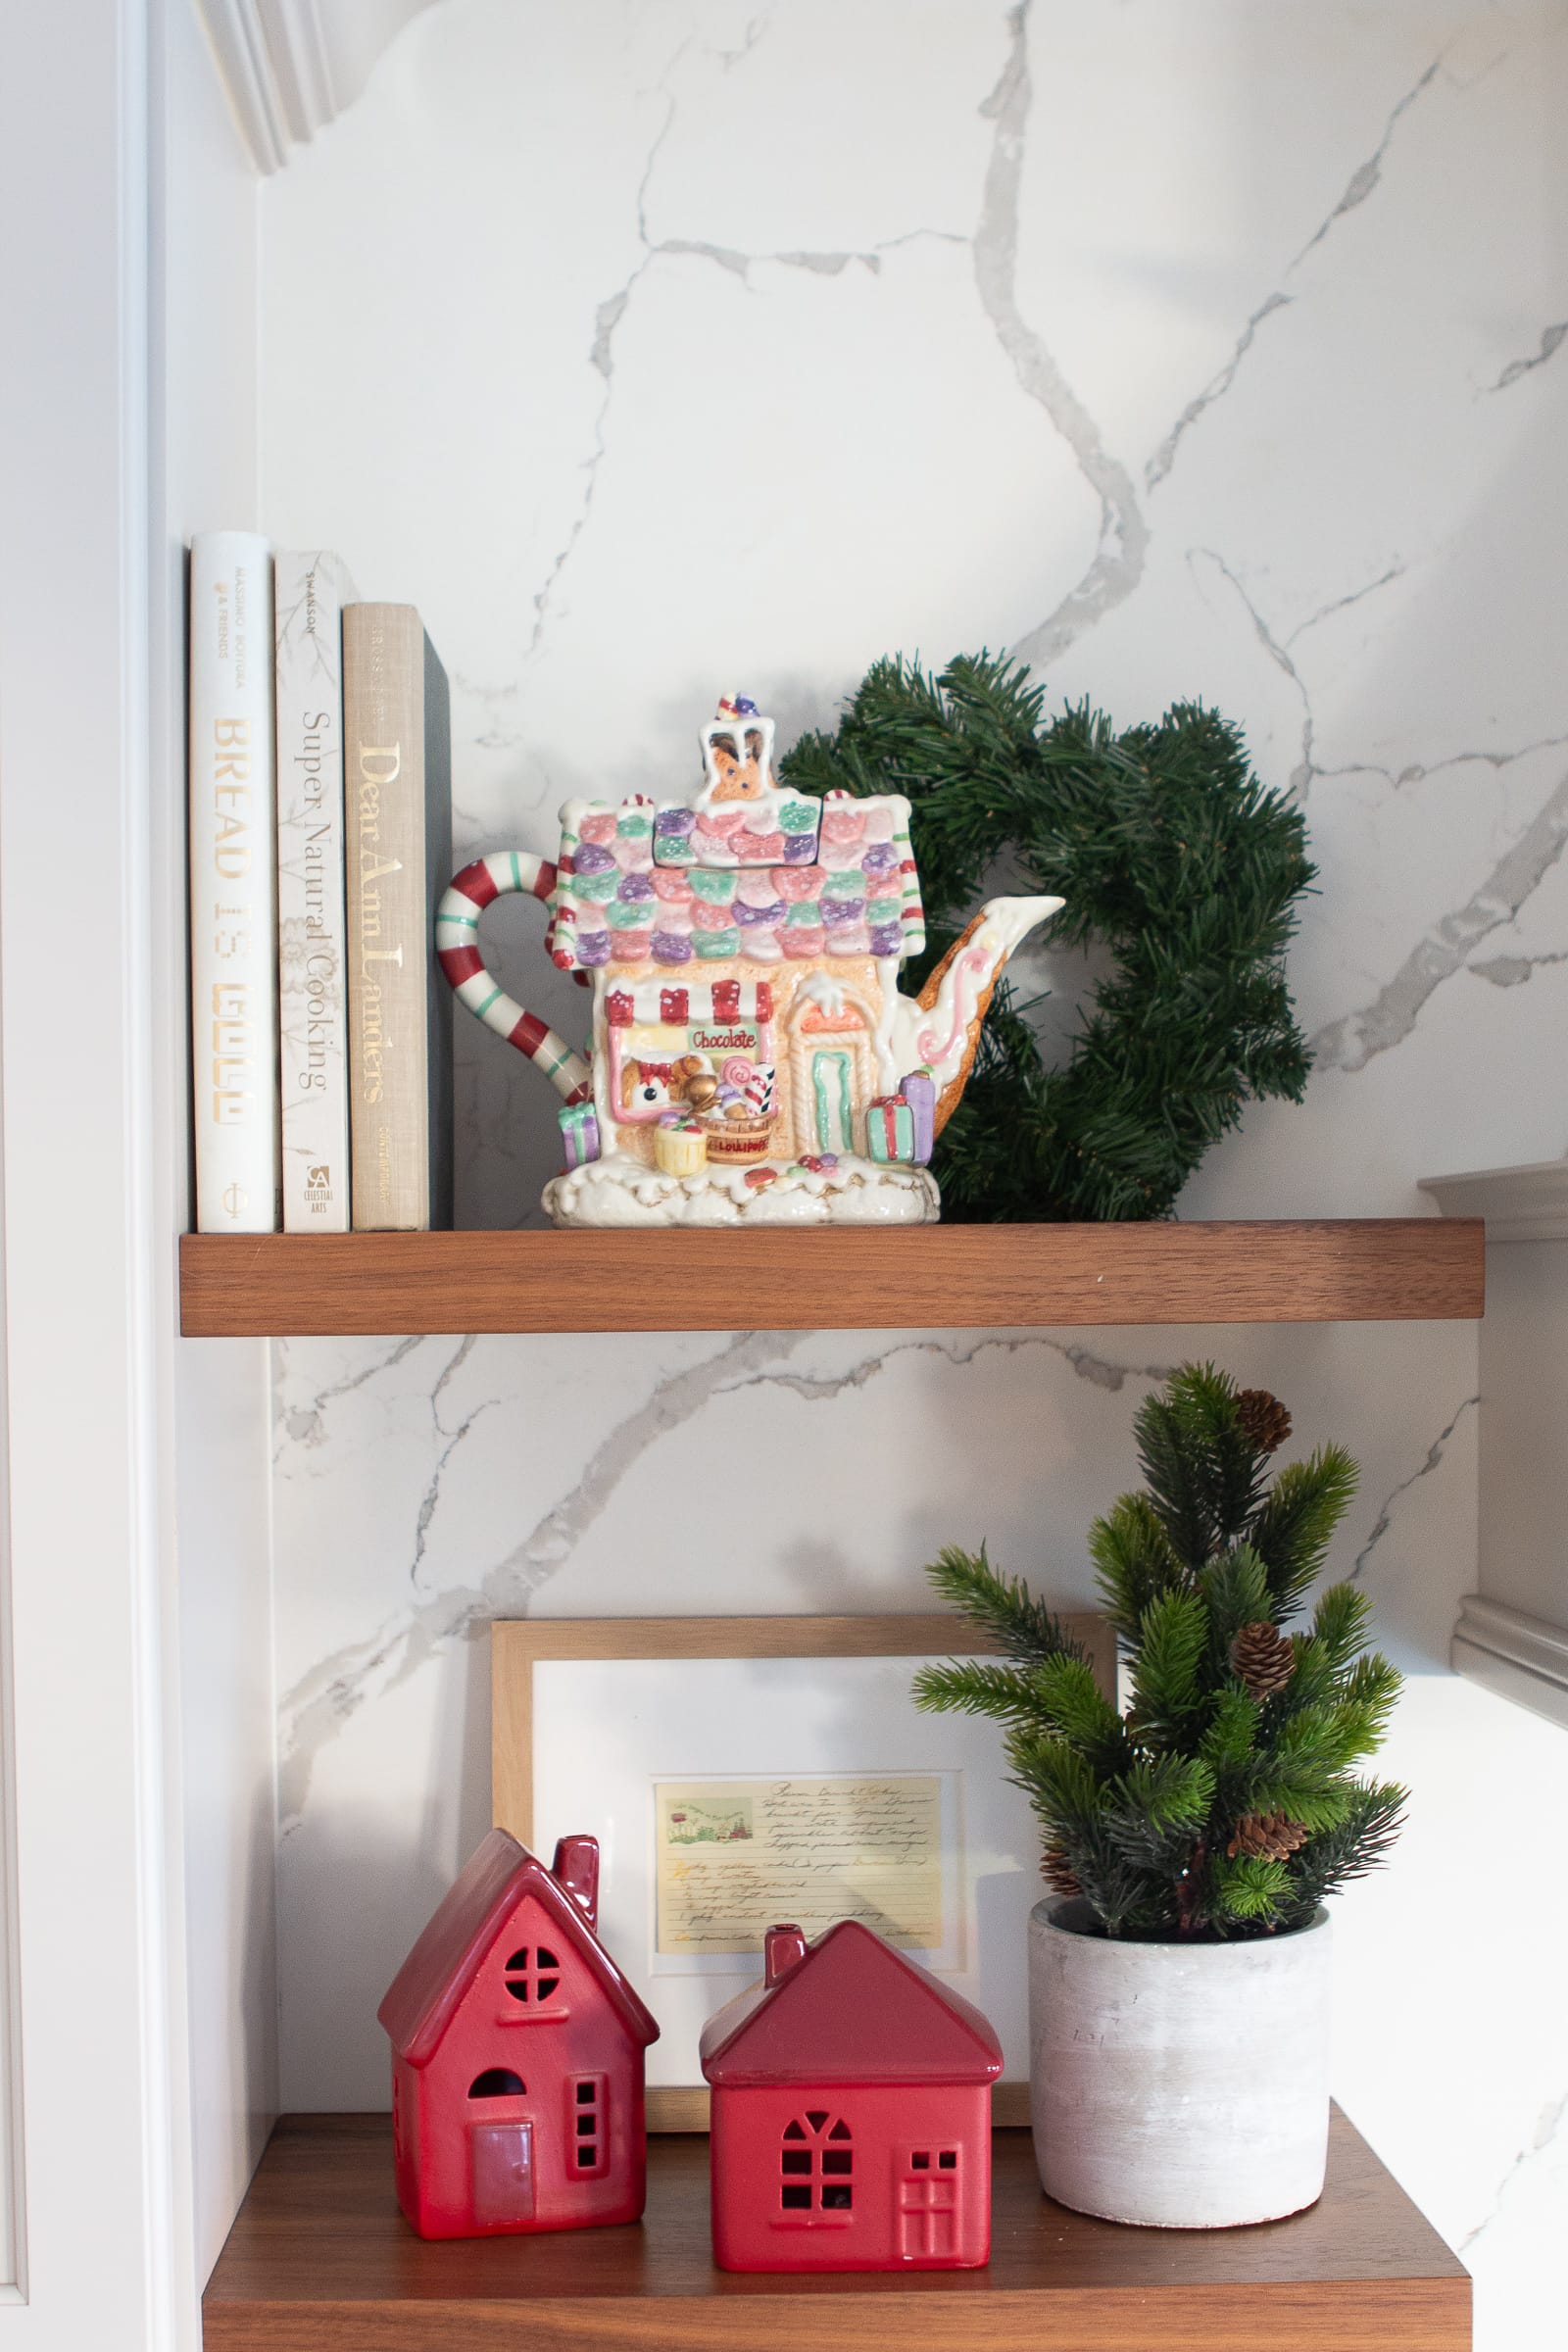 Easy shelf decor for the holidays